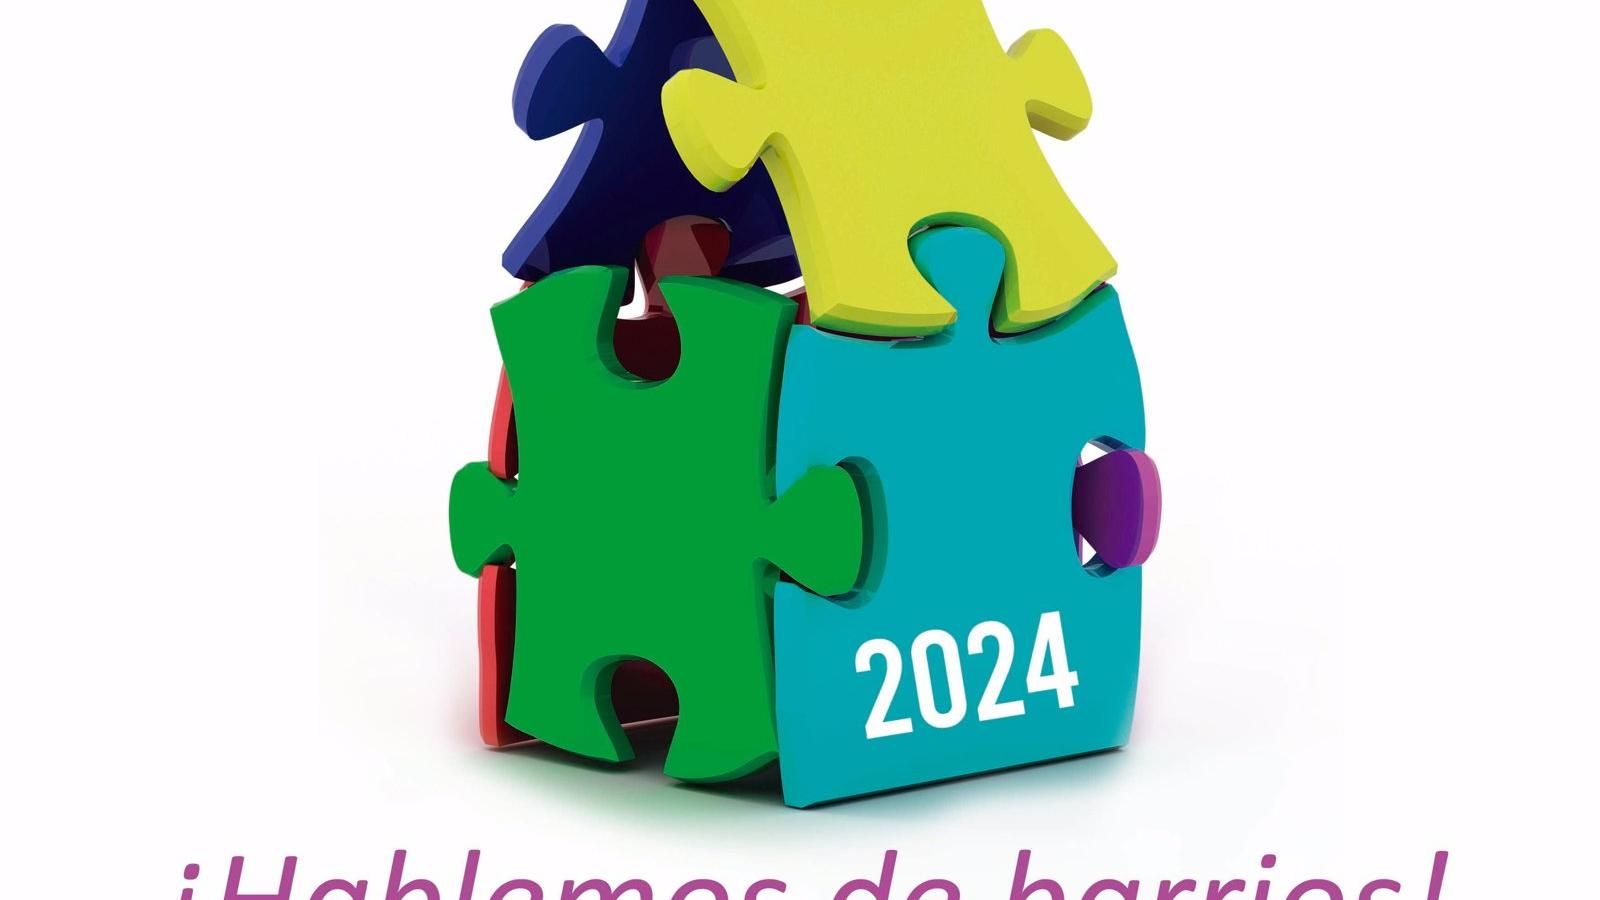 Alcalá.- Alcalá abre el plazo de inscripción hasta el 17 de mayo para constituir los Consejos de Barrio